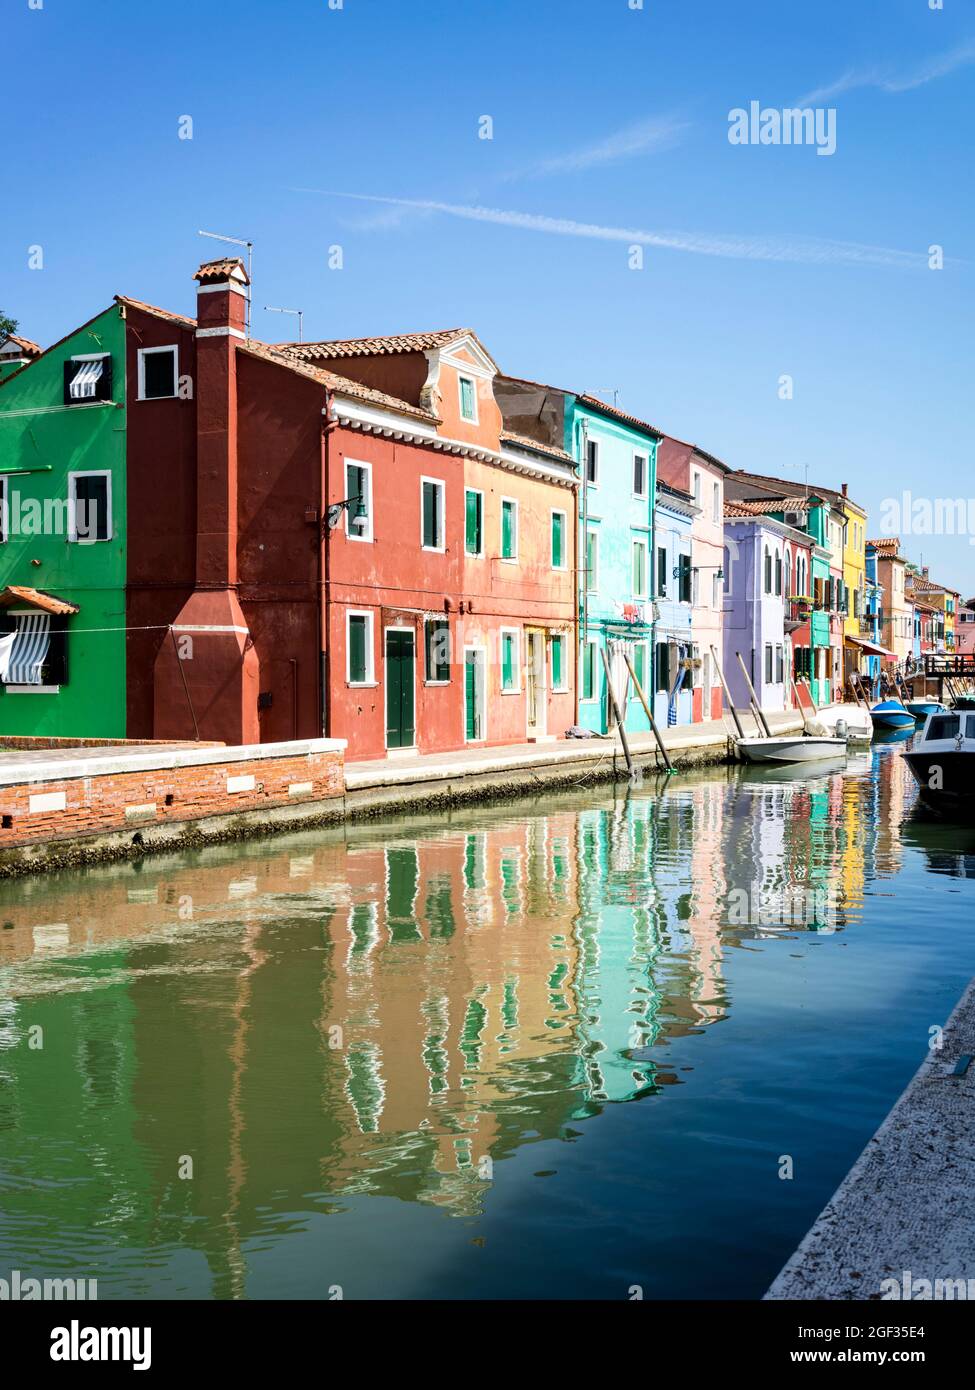 Burano island in Venice/Italy Stock Photo